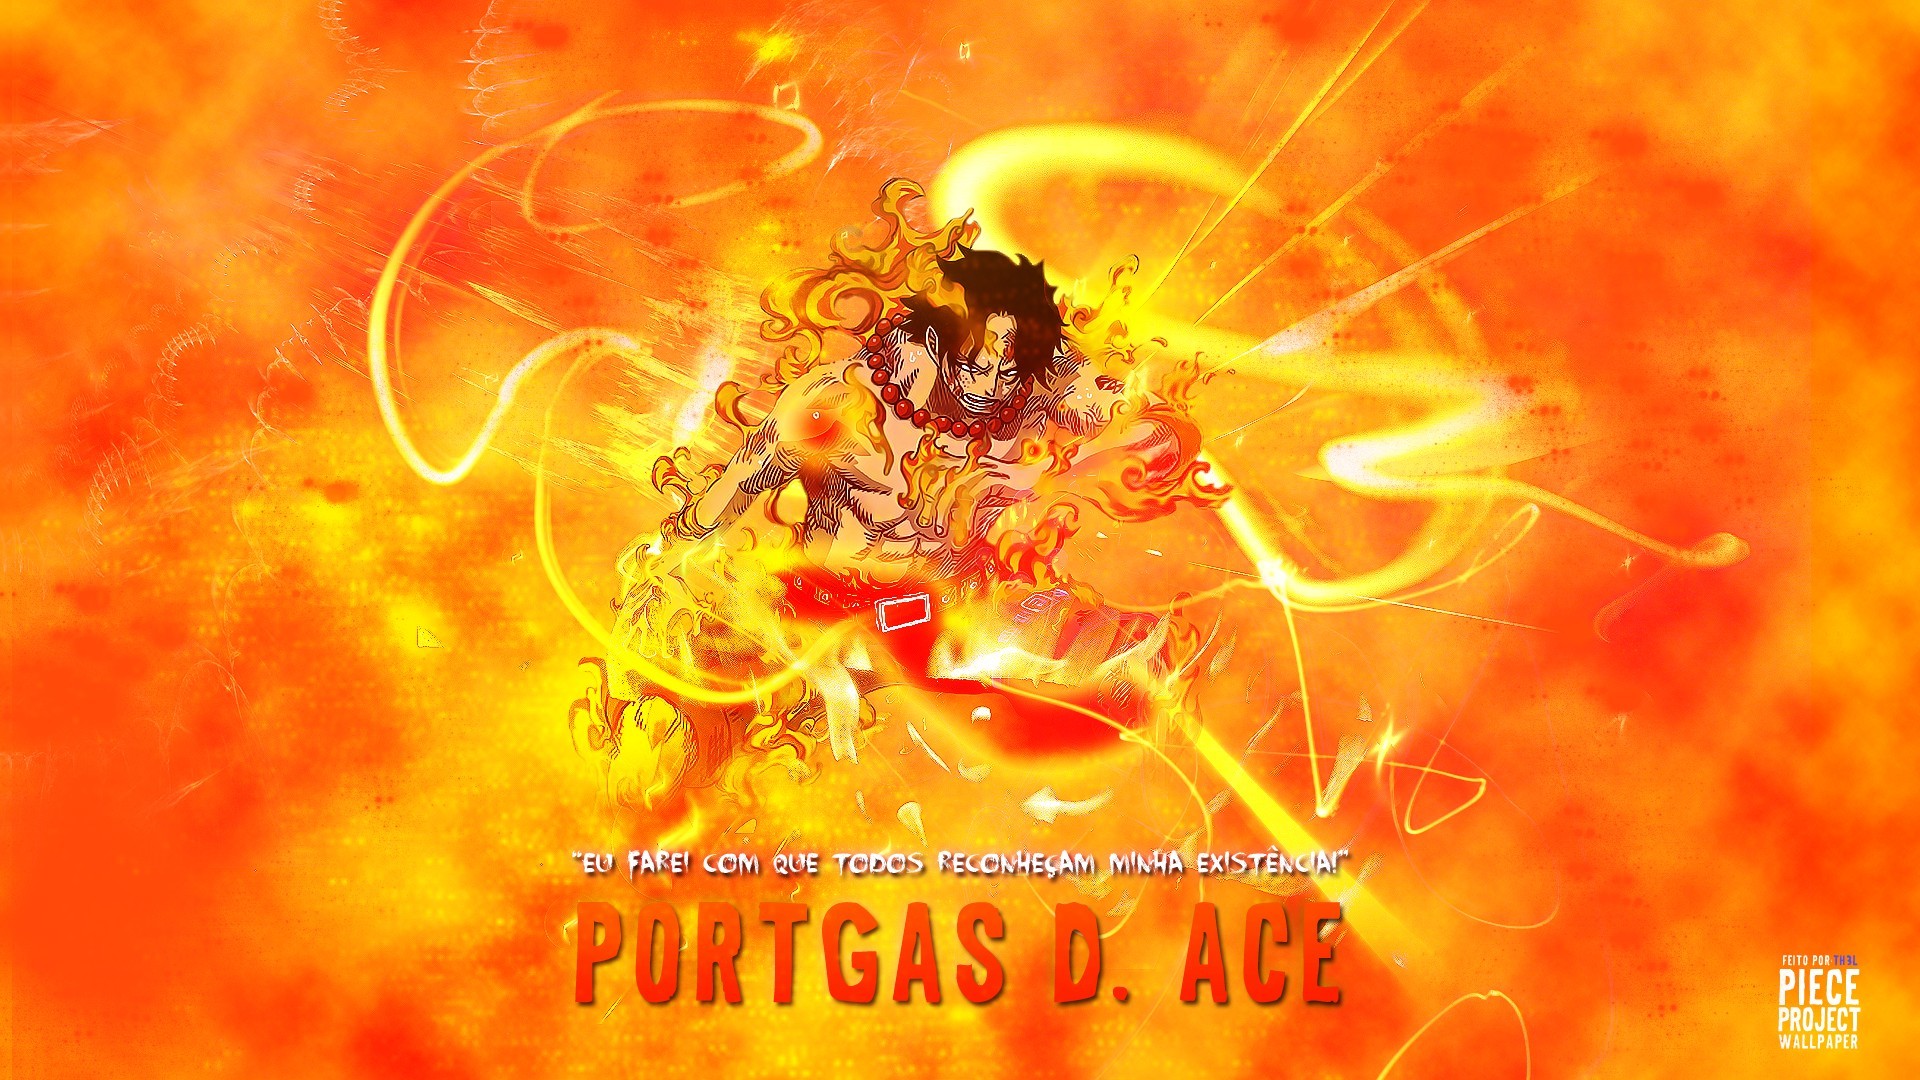 Portgas D Ace Download Portgas D Ace Image 1920x1080